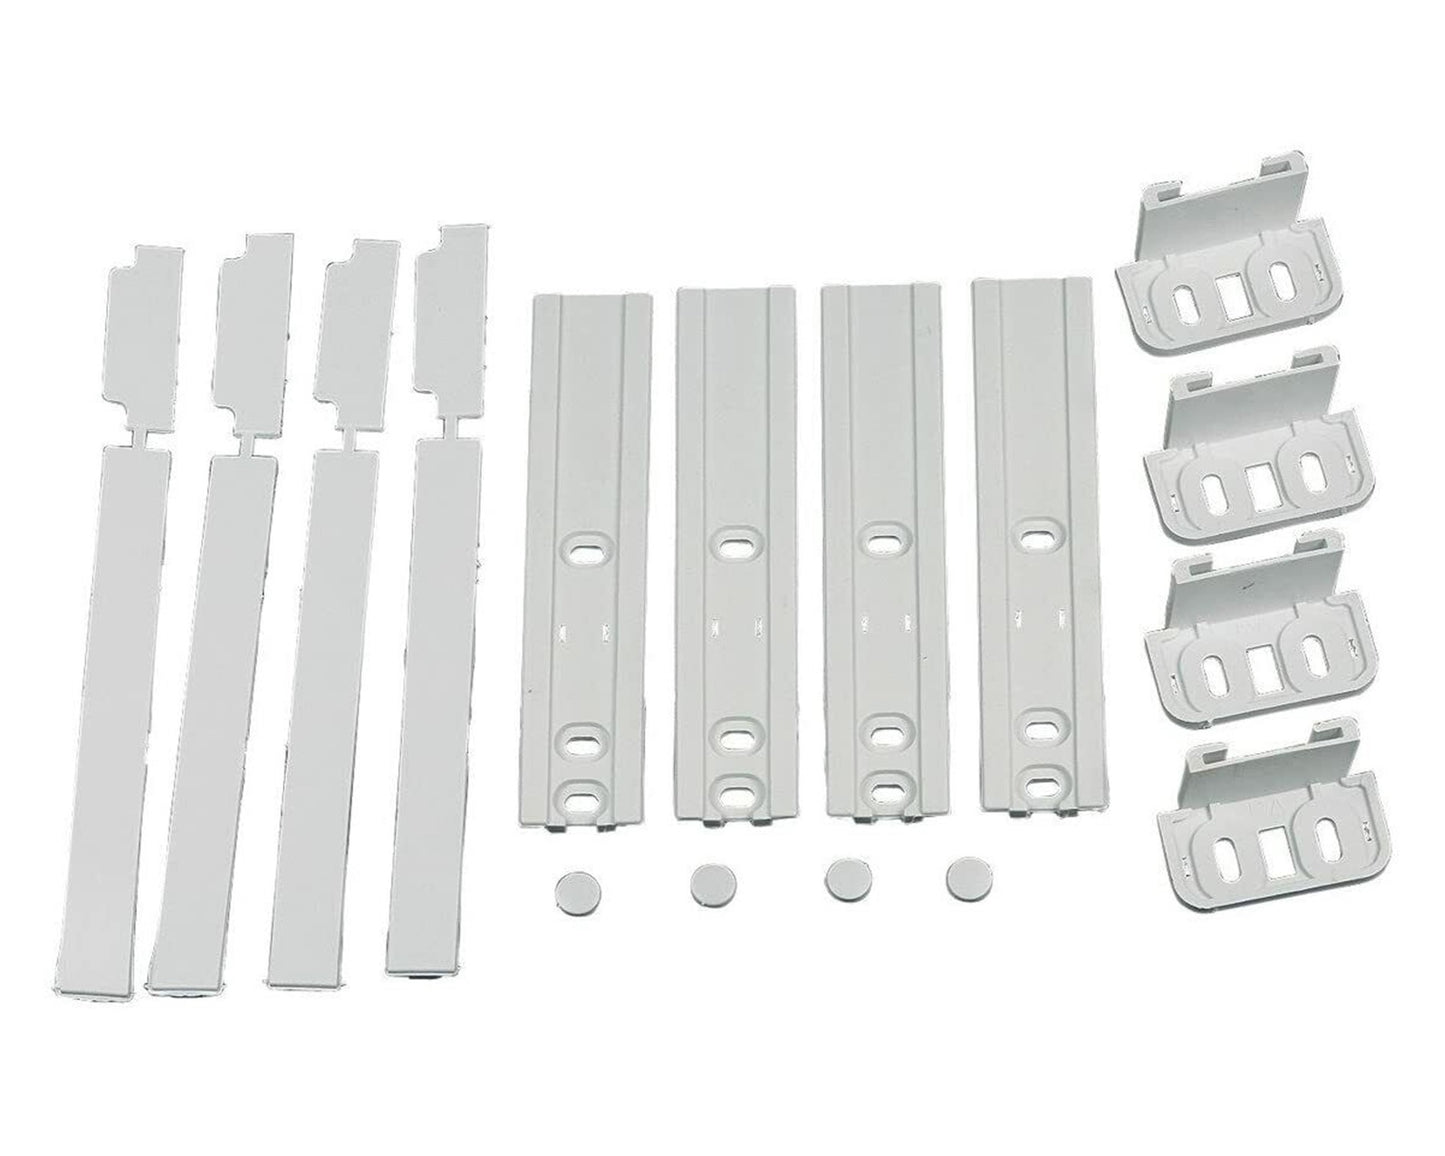 Genuine Fridge Freezer Integrated Door Hinge Fixing Slide Kit for CDA CW782/1, CW782/2, CW784, CW784/2, CW787, CW795/1, CW795/2, CW796/1, CW796/2